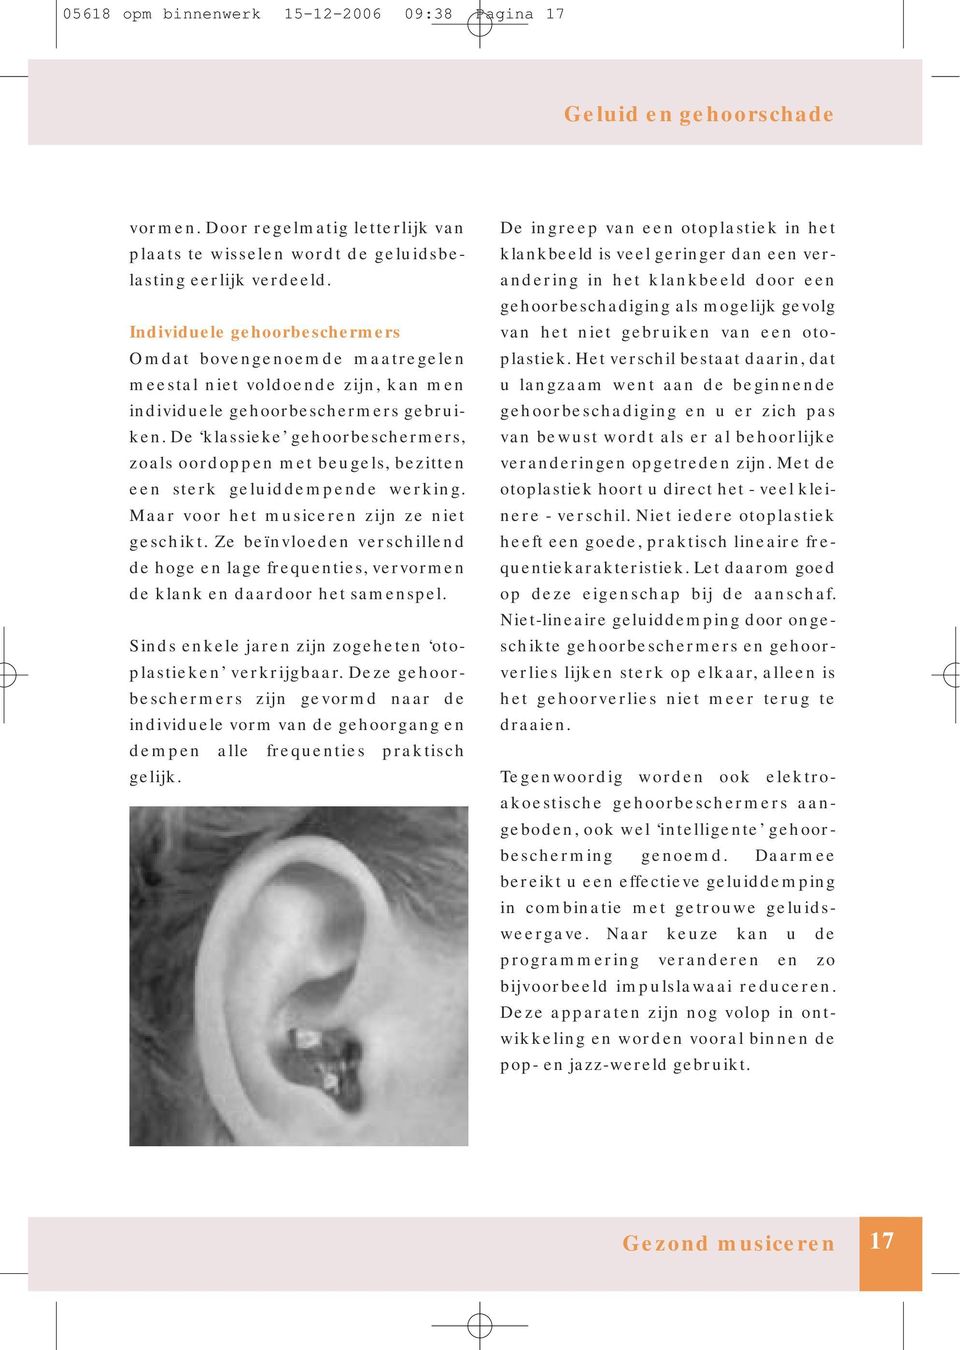 De klassieke gehoorbeschermers, zoals oordoppen met beugels, bezitten een sterk geluiddempende werking. Maar voor het musiceren zijn ze niet geschikt.